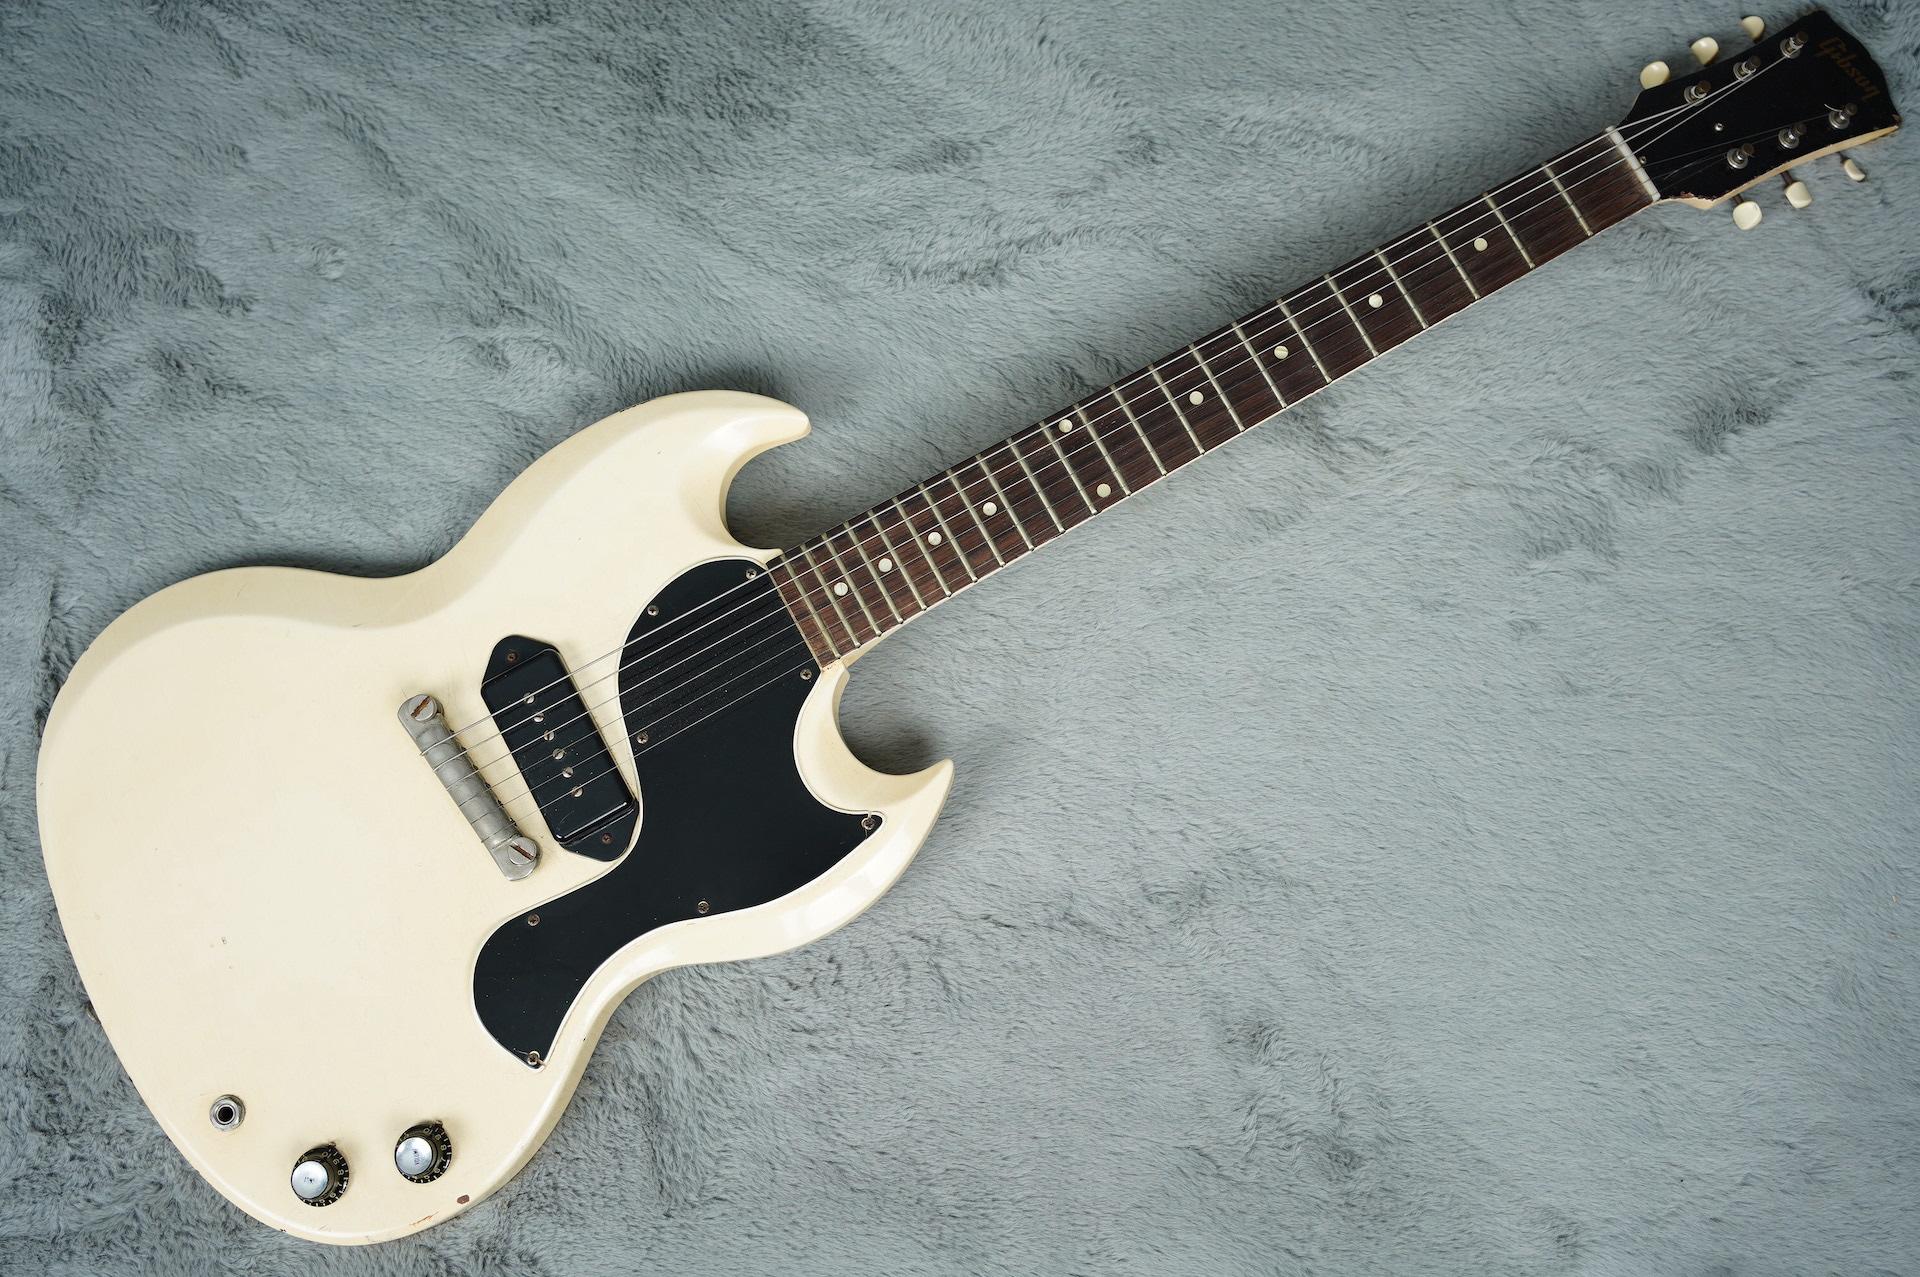 1962 Gibson Les Paul SG Junior white + HSC